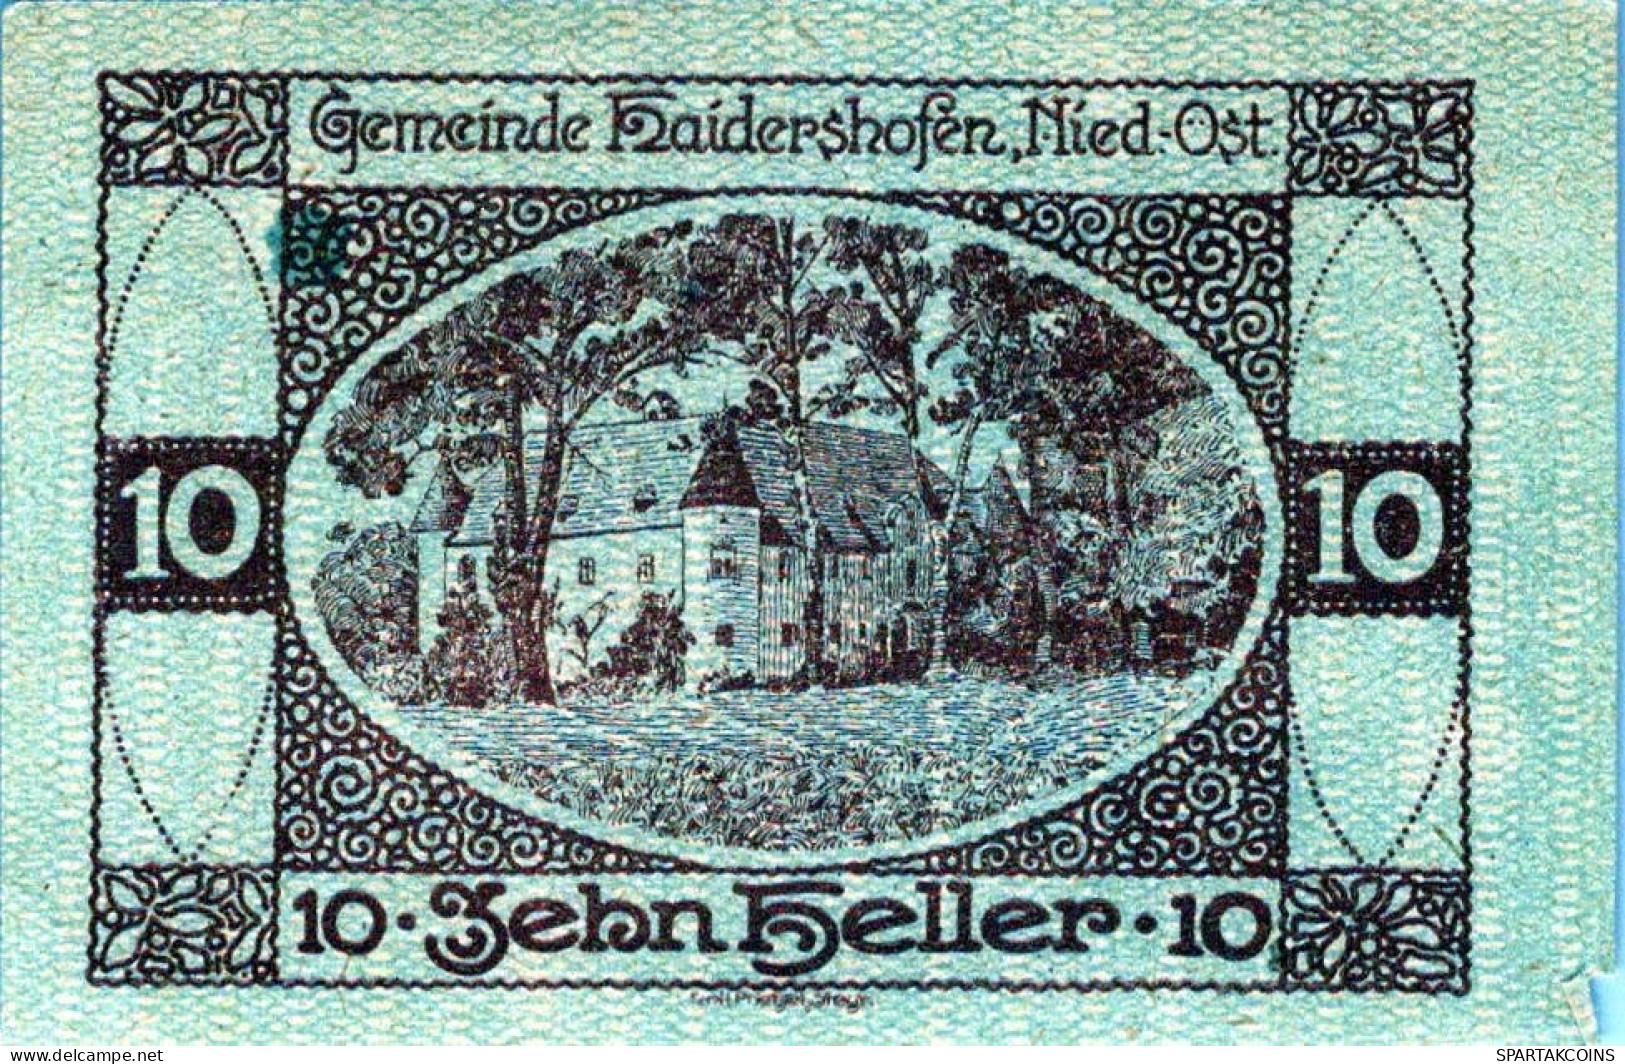 10 HELLER 1920 Stadt HAIDERSHOFEN Niedrigeren Österreich Notgeld #PD619 - [11] Lokale Uitgaven